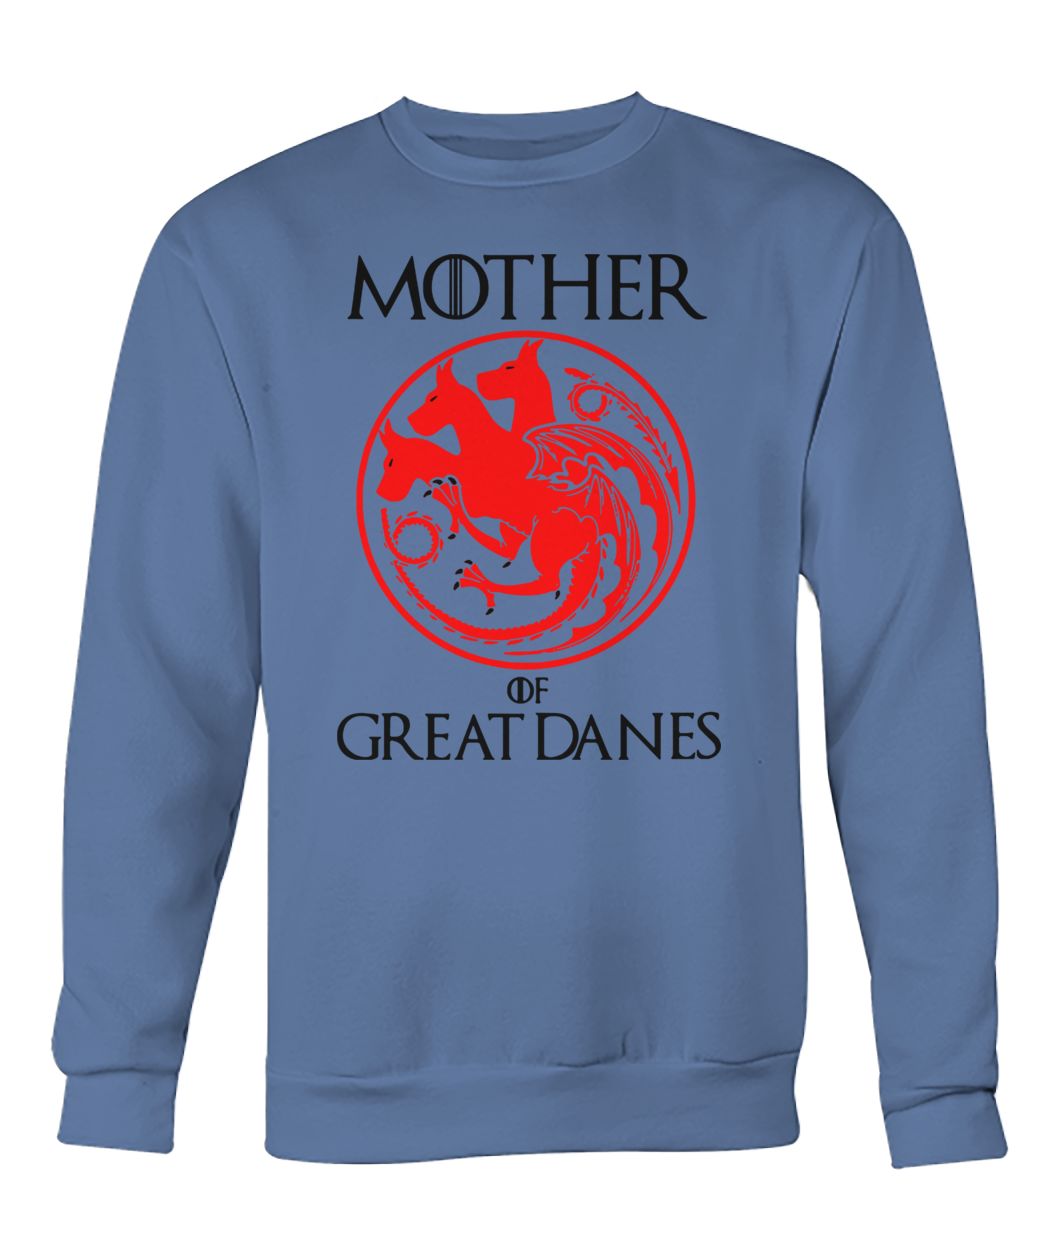 Game of thrones mother of great danes crew neck sweatshirt